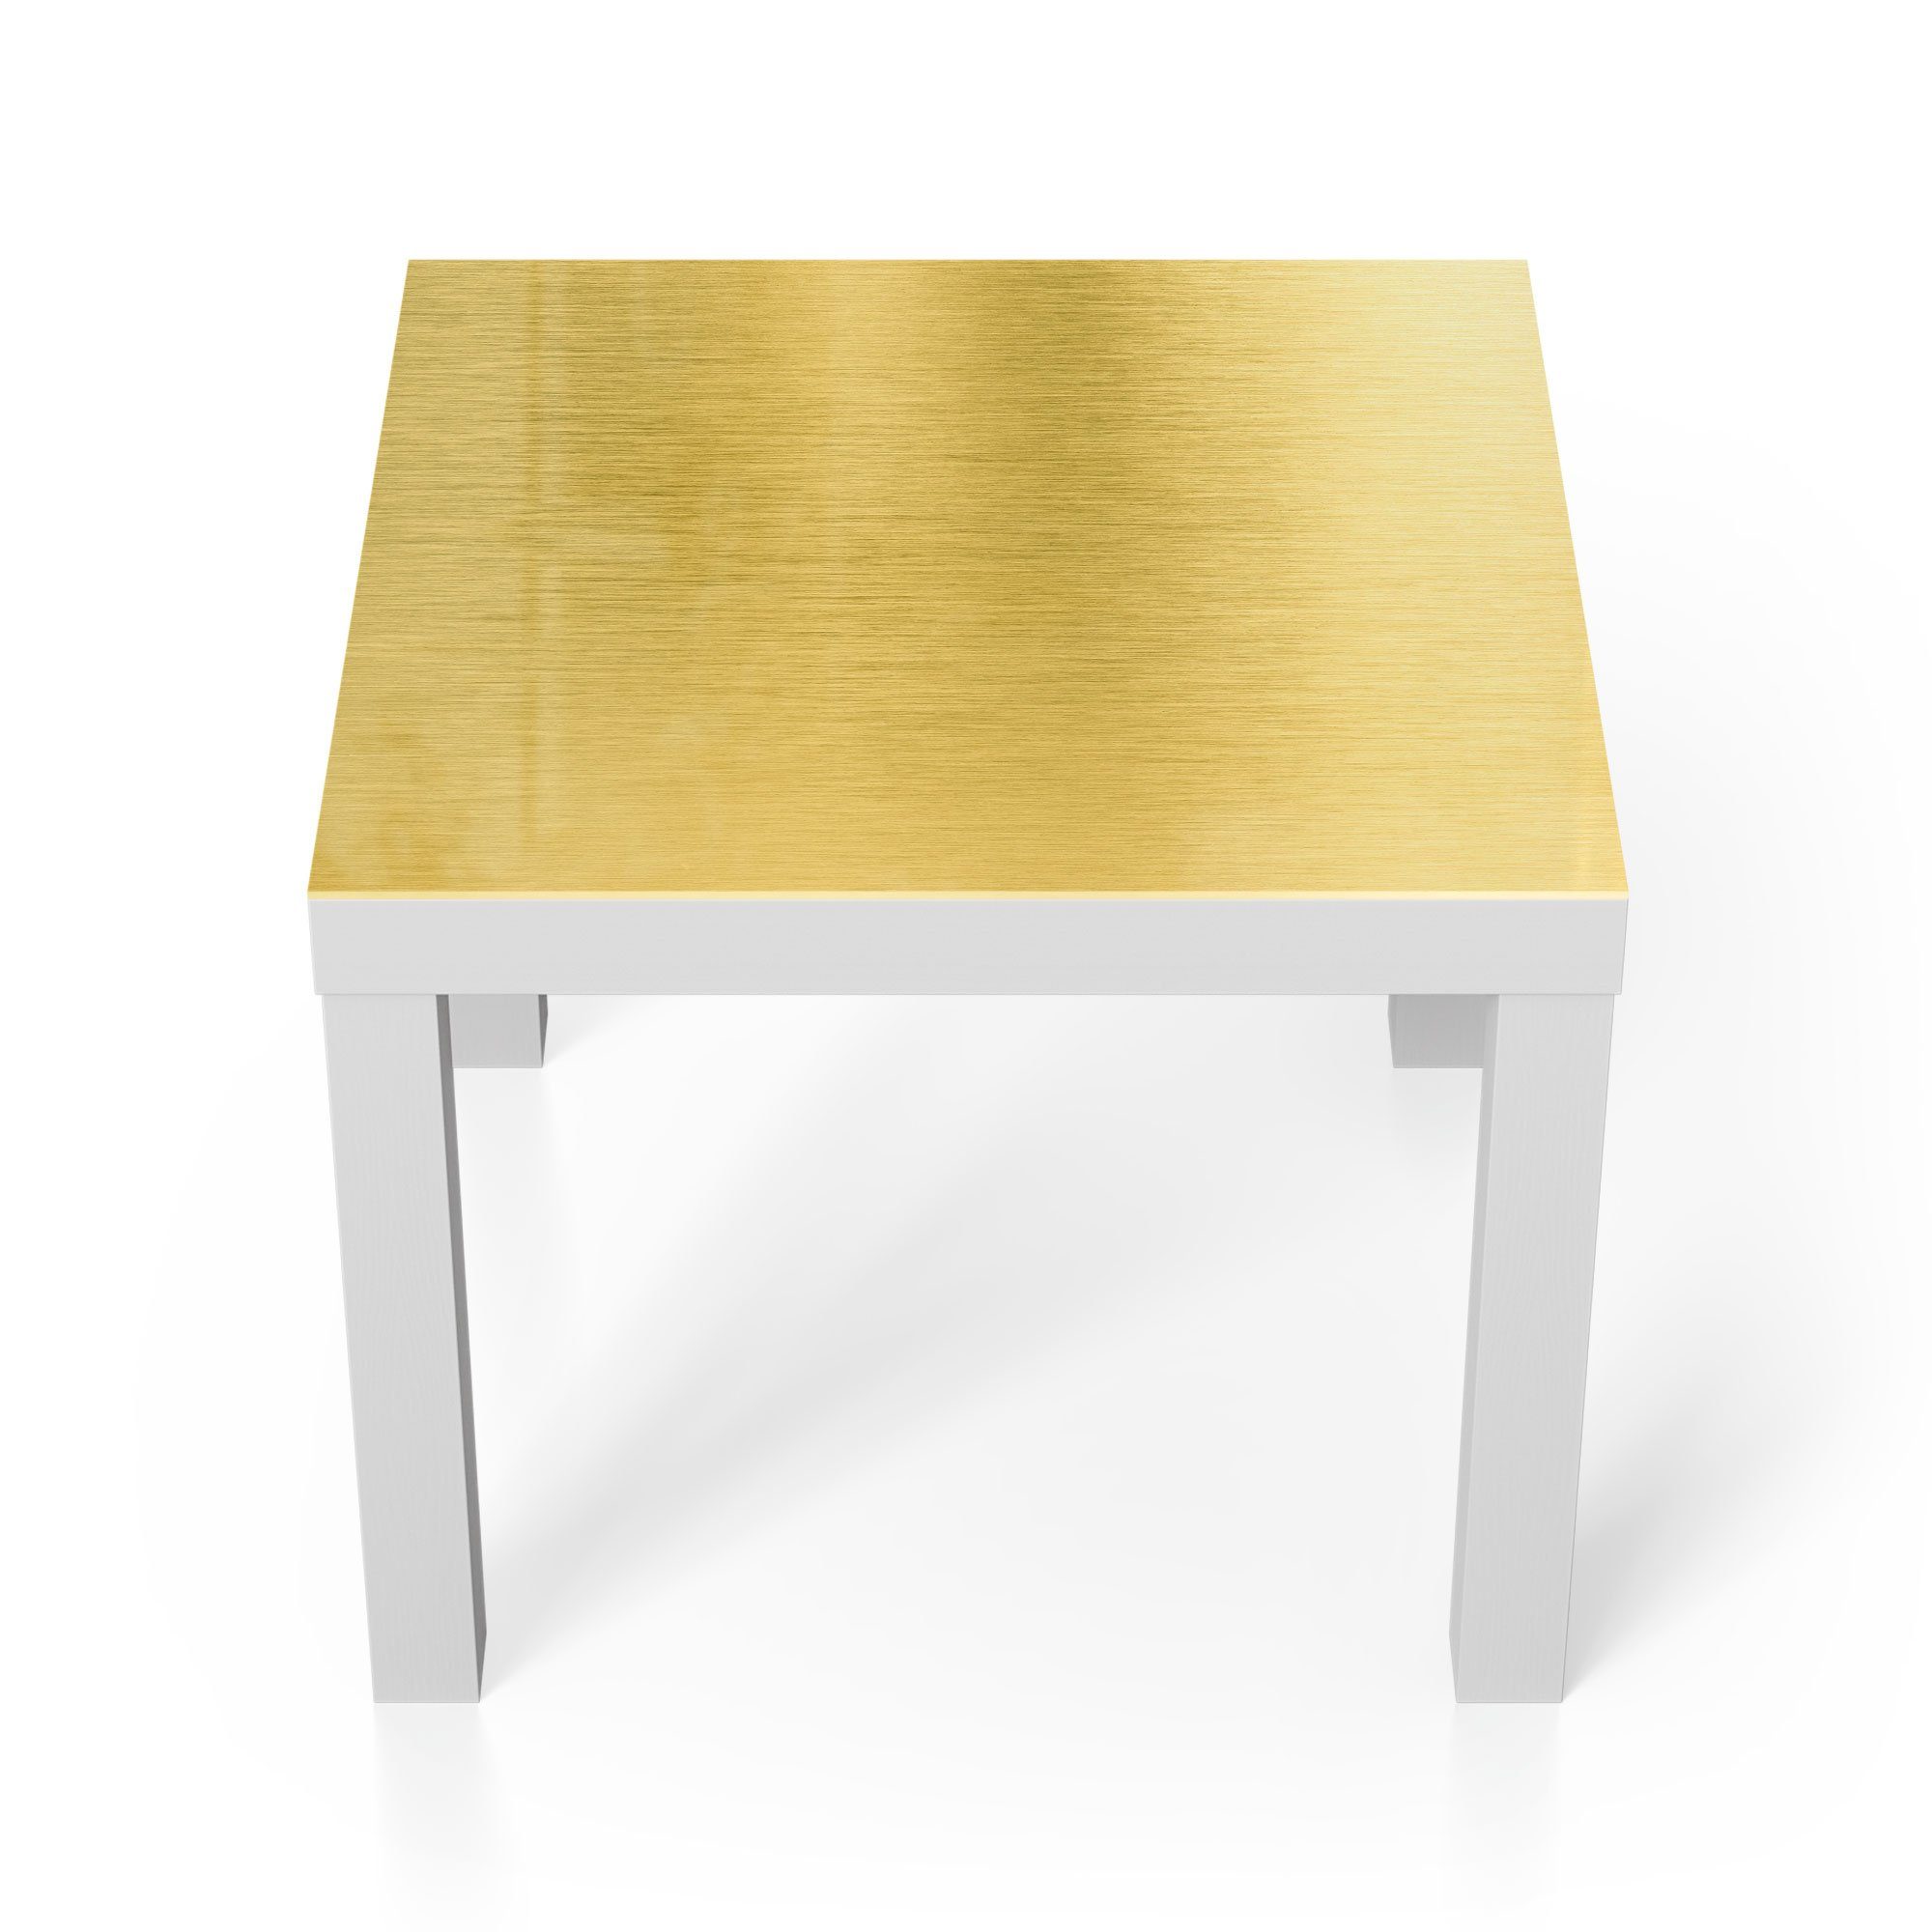 DEQORI Couchtisch 'Gebürstete Goldoberfläche', Glas Beistelltisch Glastisch modern Weiß